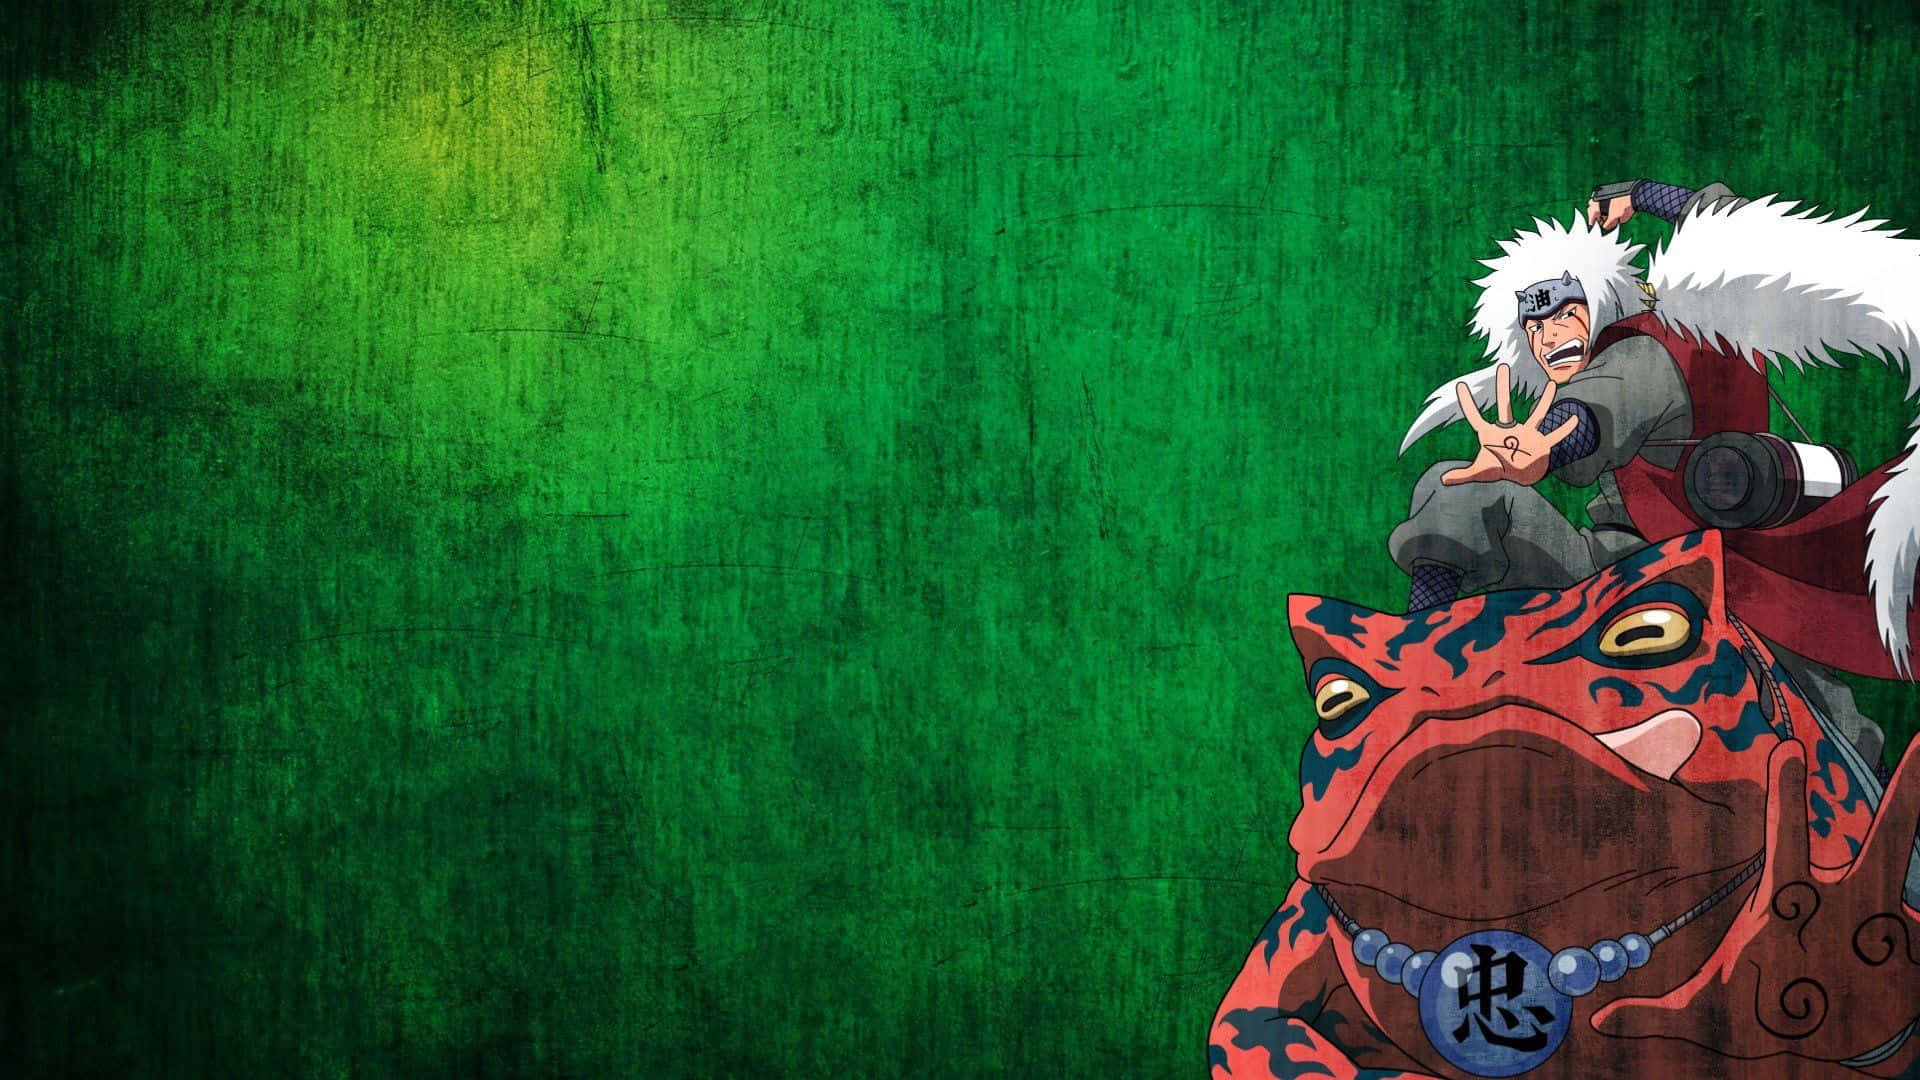 Engrön Bakgrund Med En Naruto Karaktär På Toppen Wallpaper